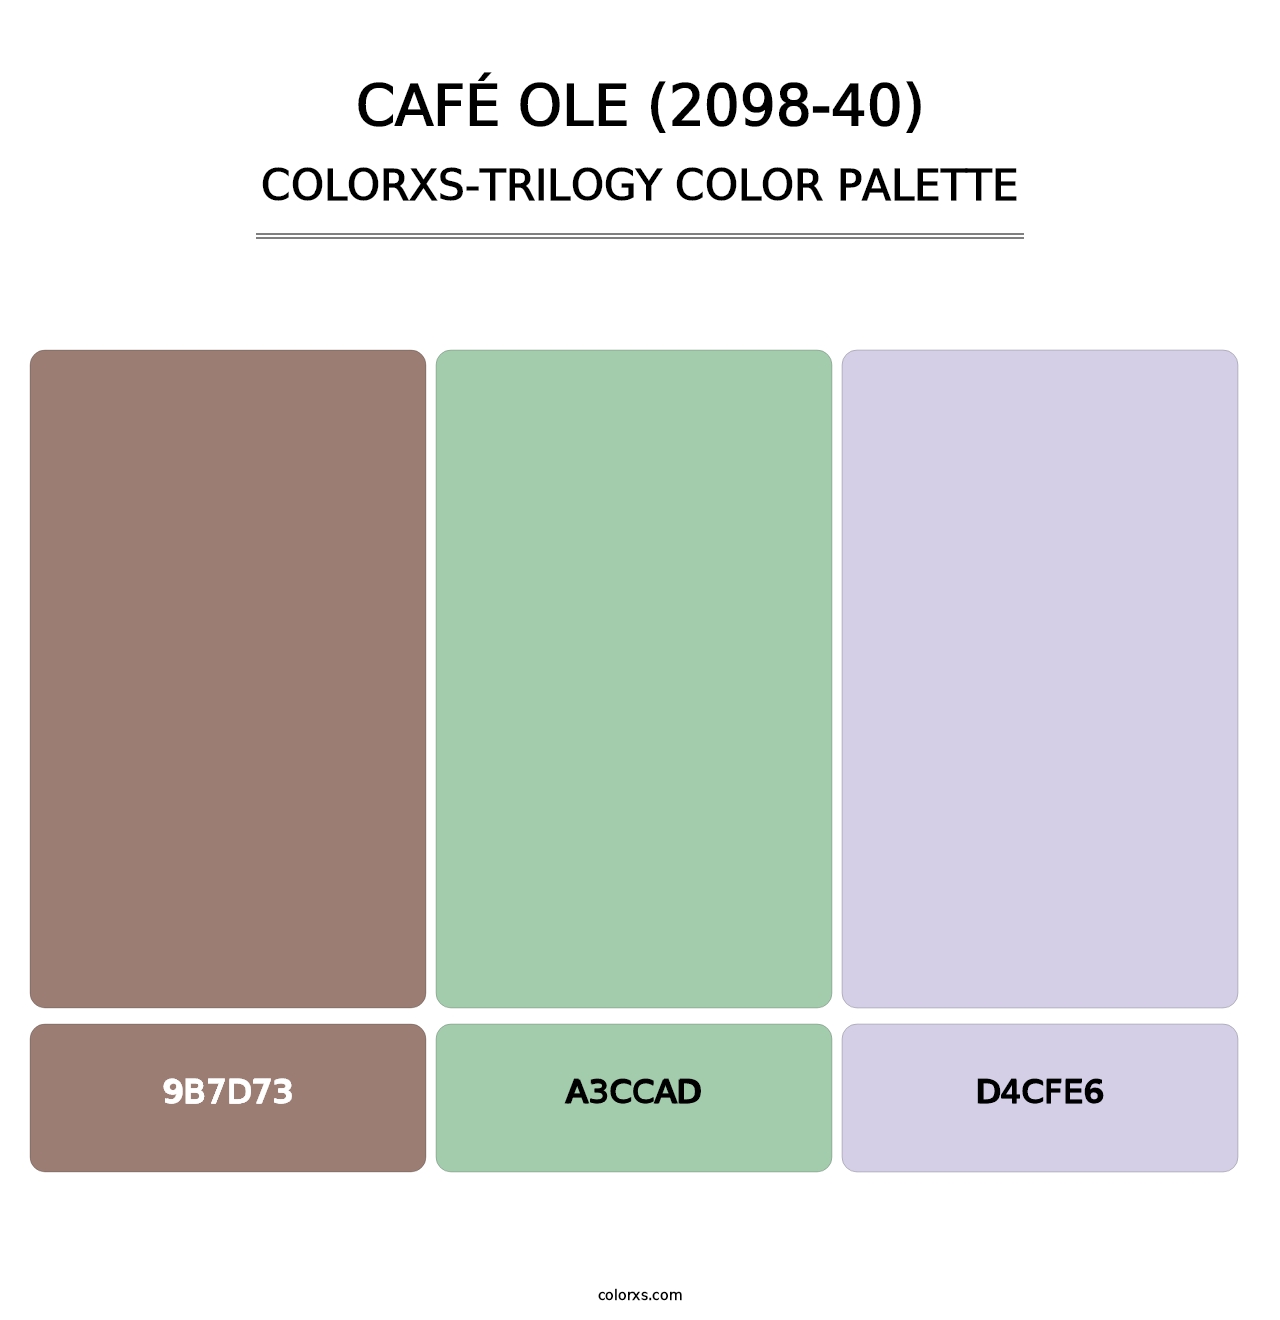 Café Ole (2098-40) - Colorxs Trilogy Palette